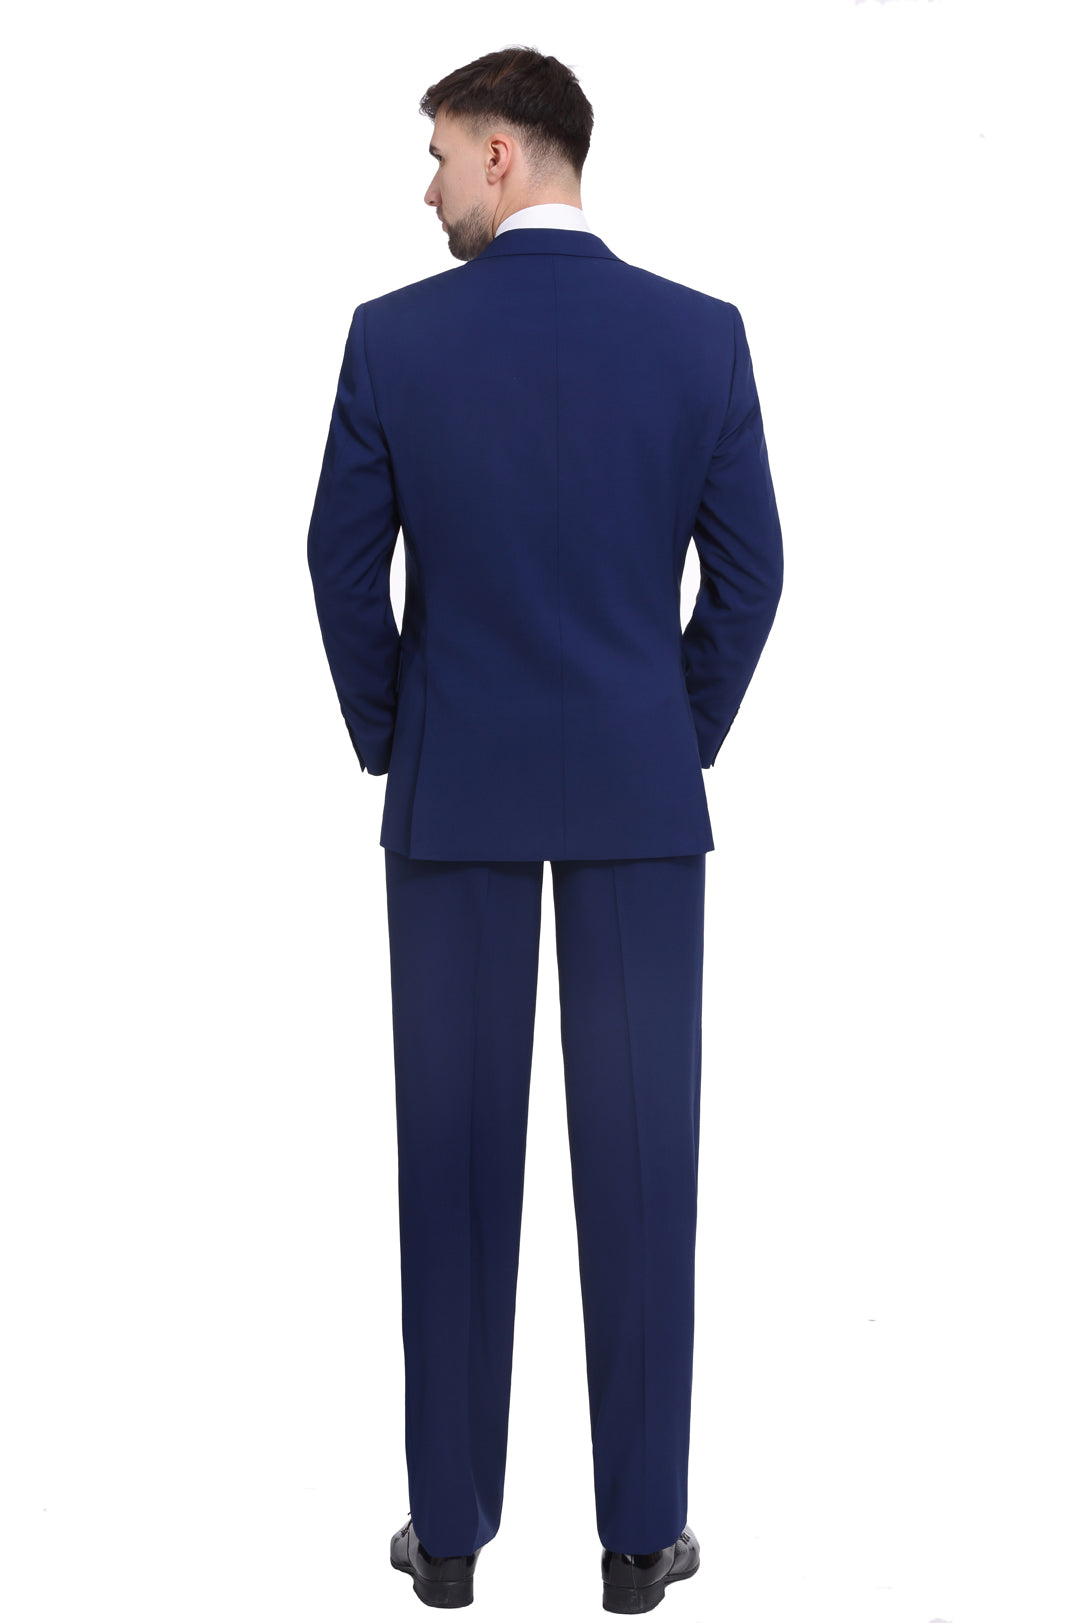 P&L Men's 3-Piece Classic Fit Dress Suits Tuxedo Blazer Jacket Tux Vest & Pants Set